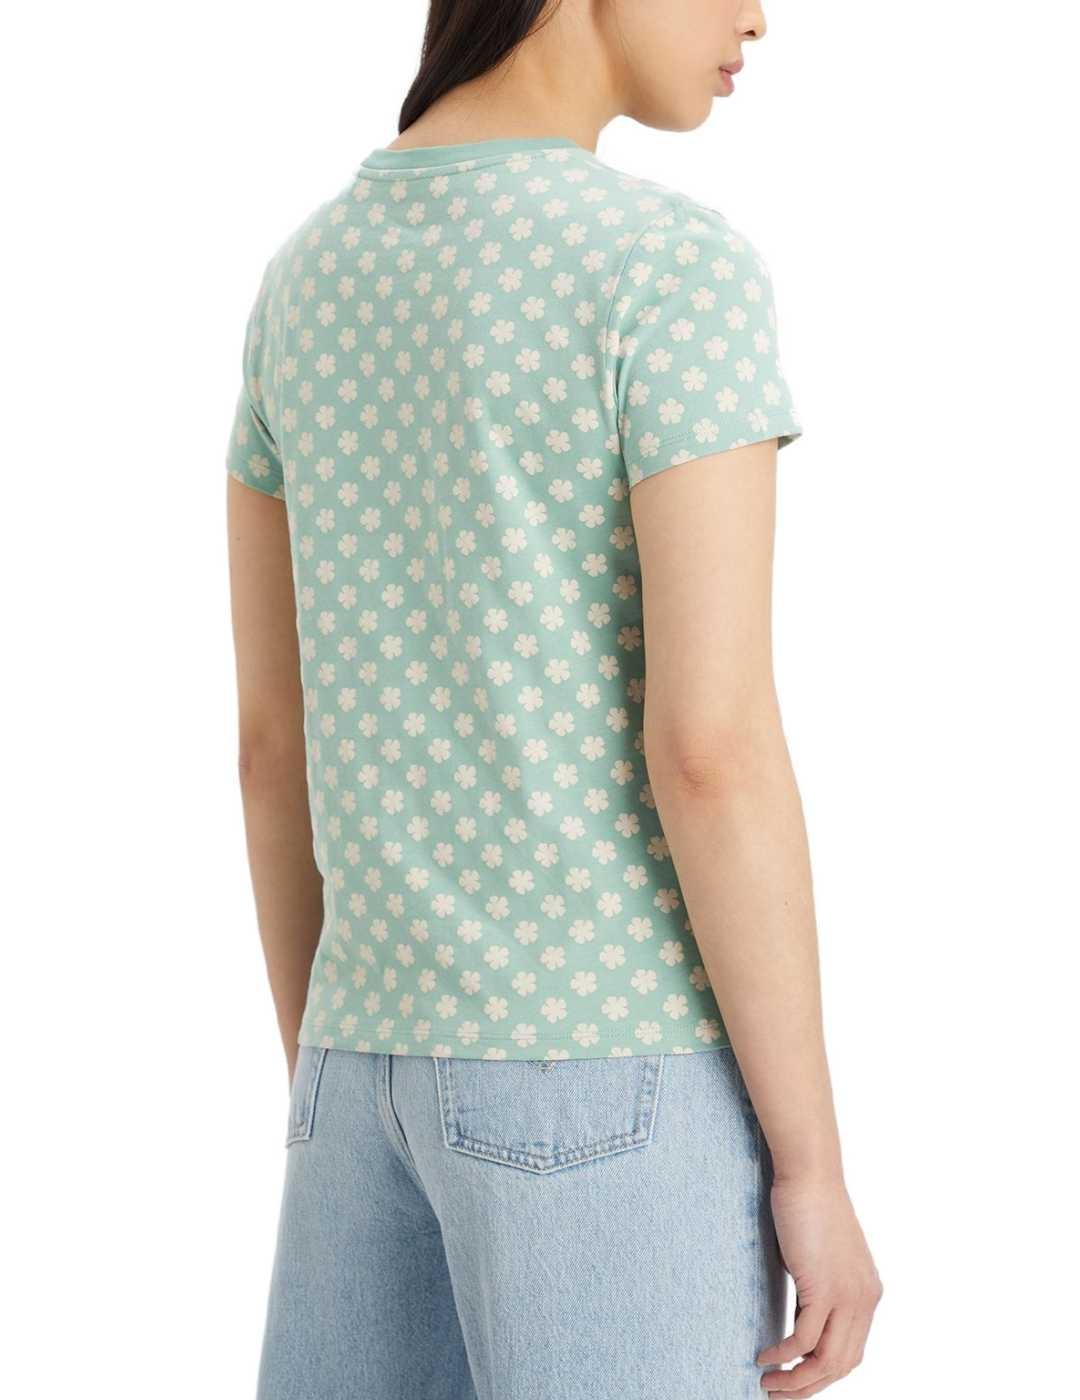 Camiseta Levis floral granito manga corta para mujer